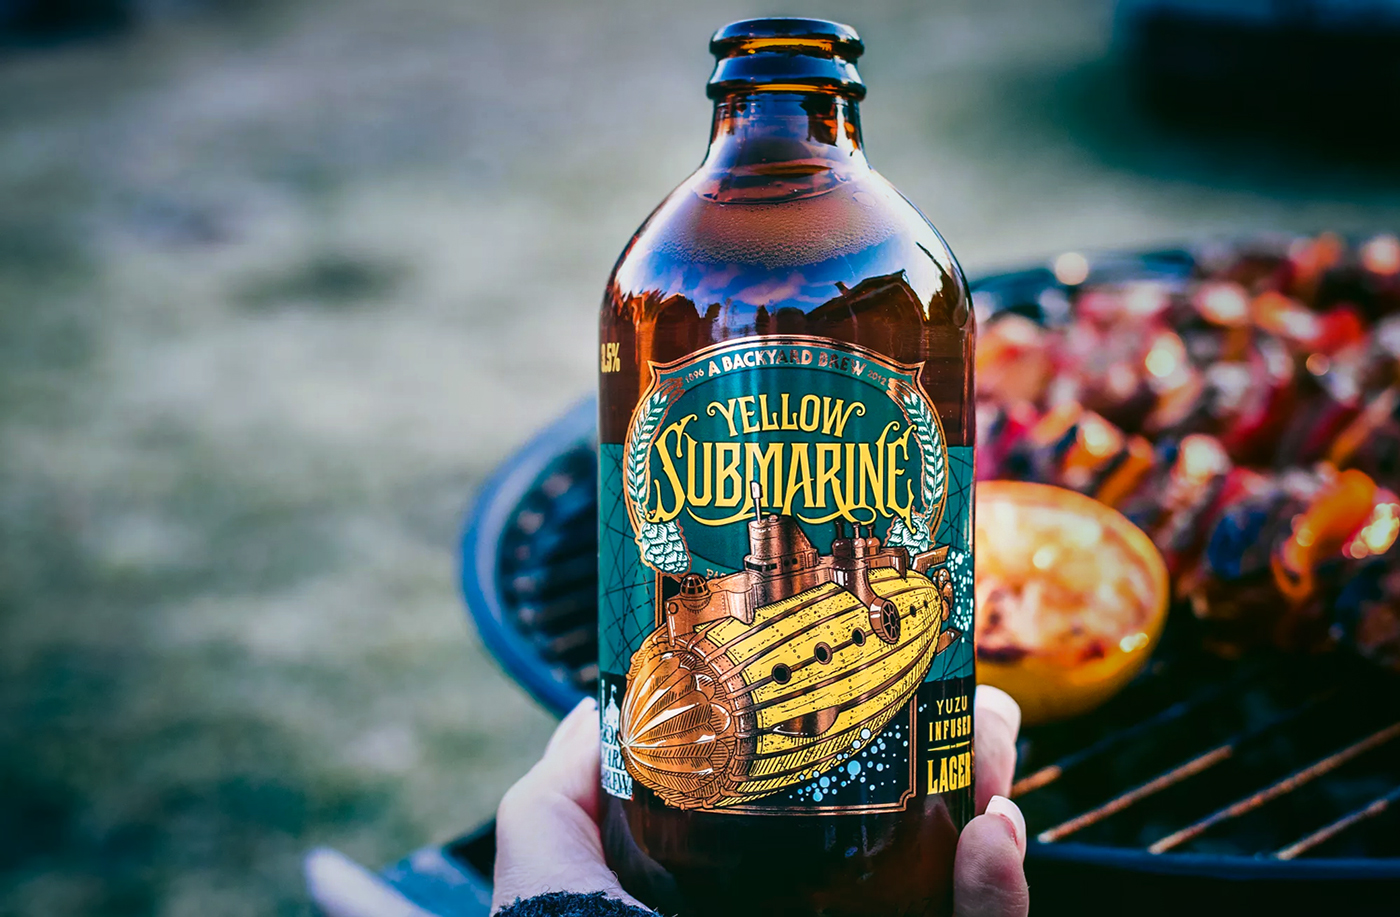 submarine beer bottle lager yuzu